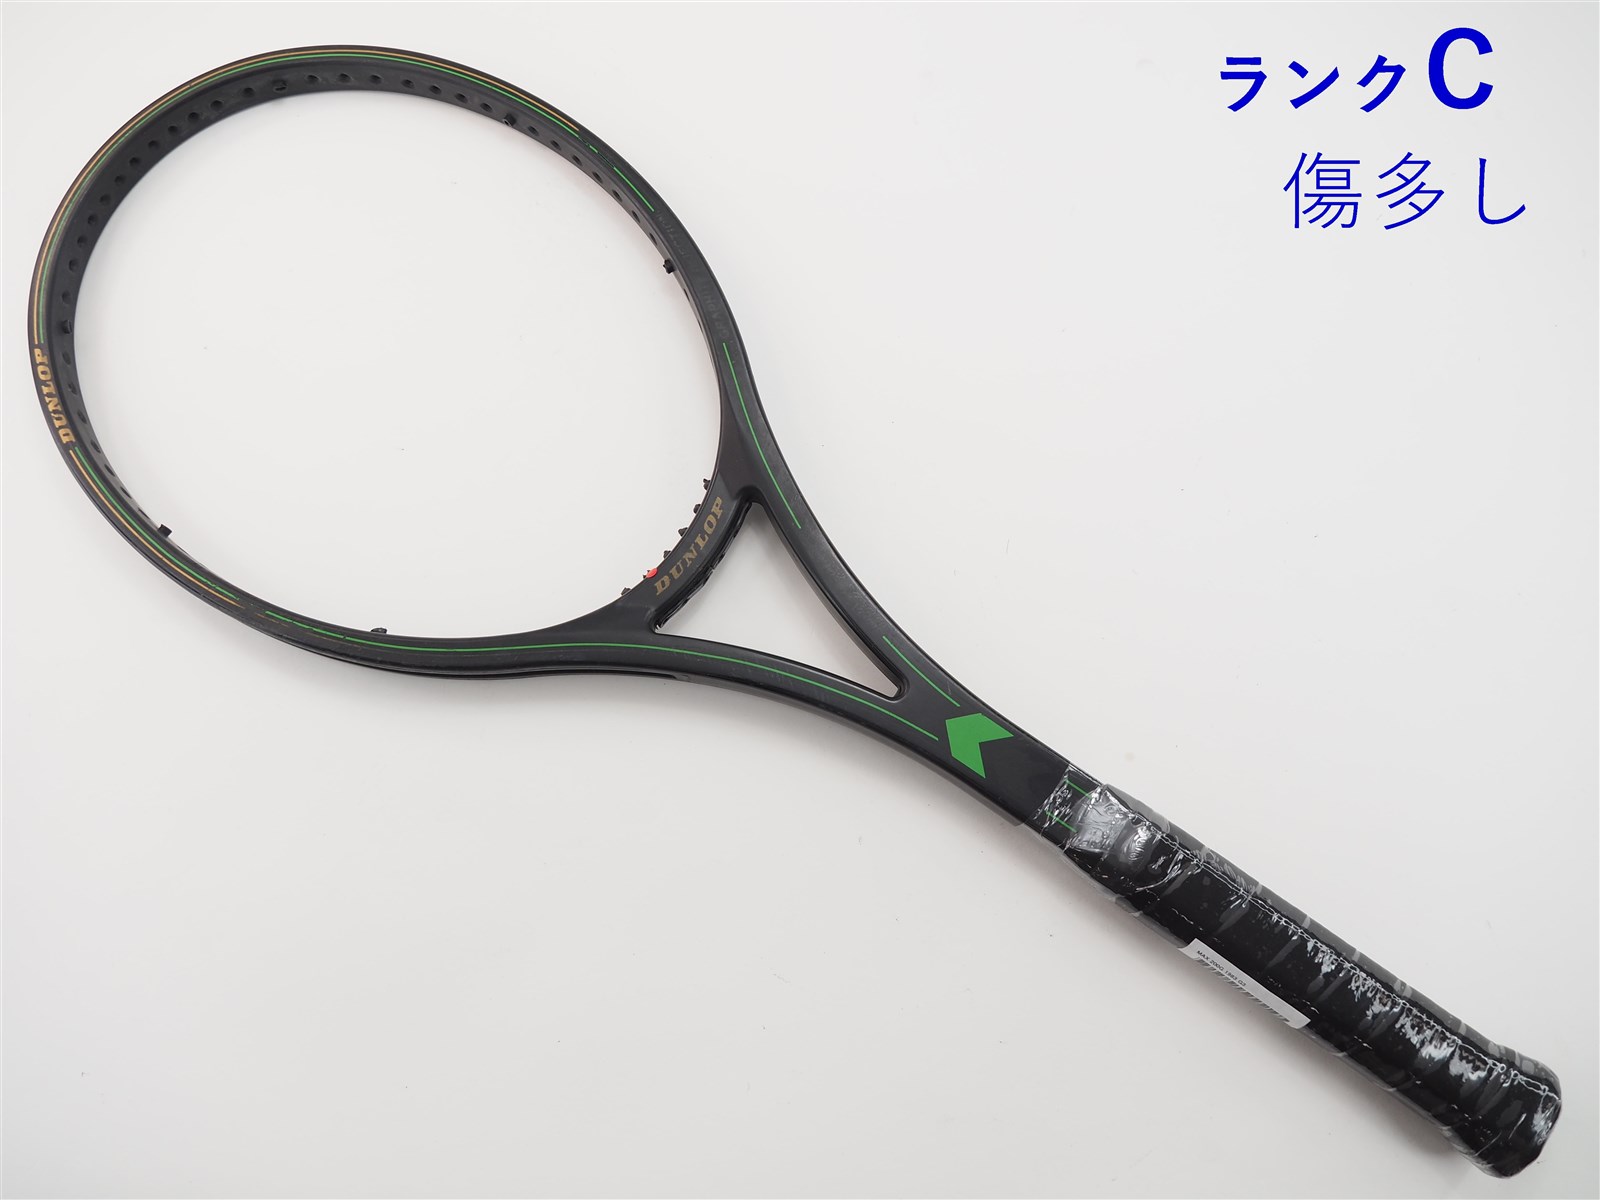 Wilson【希少】ダンロップMAX200G テニスラケット ジョンマッケンロー 